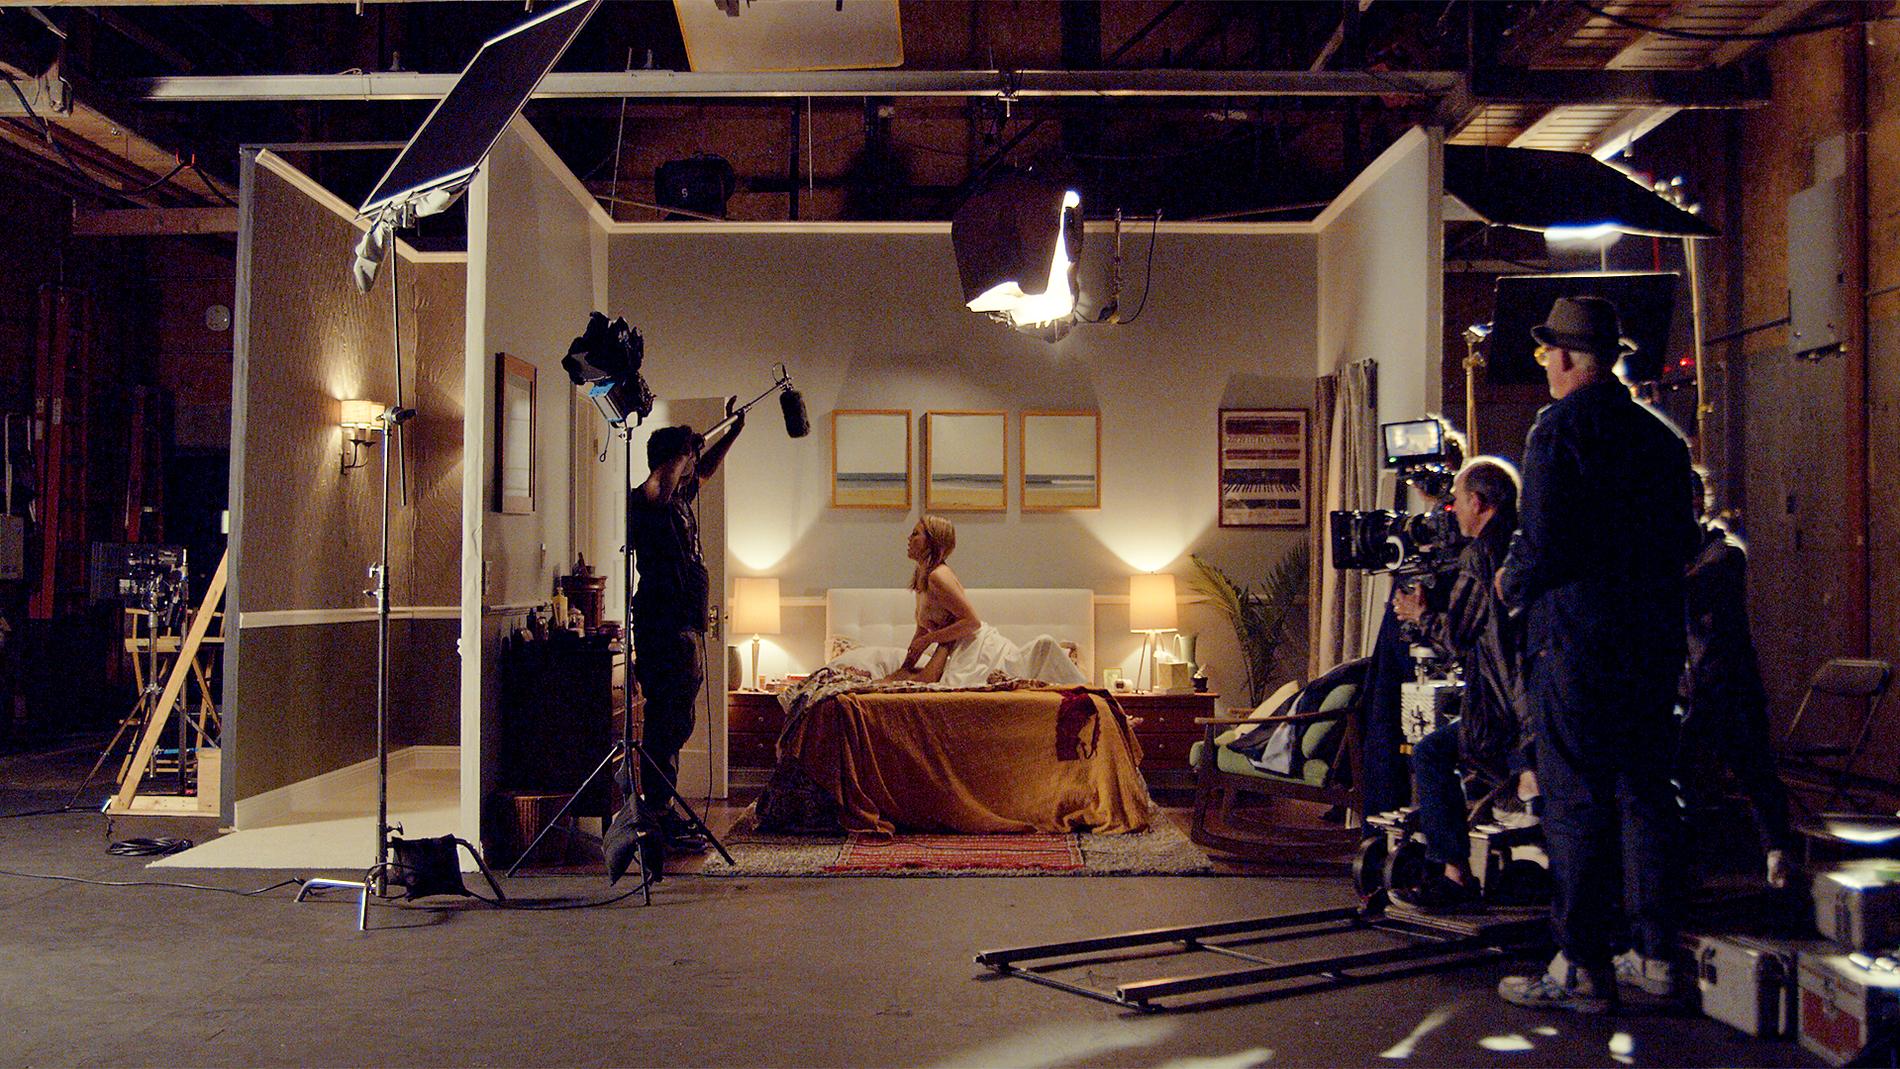 Inspelning av sexscen, från dokumentären ”Body parts – nakenscener i Hollywood”.